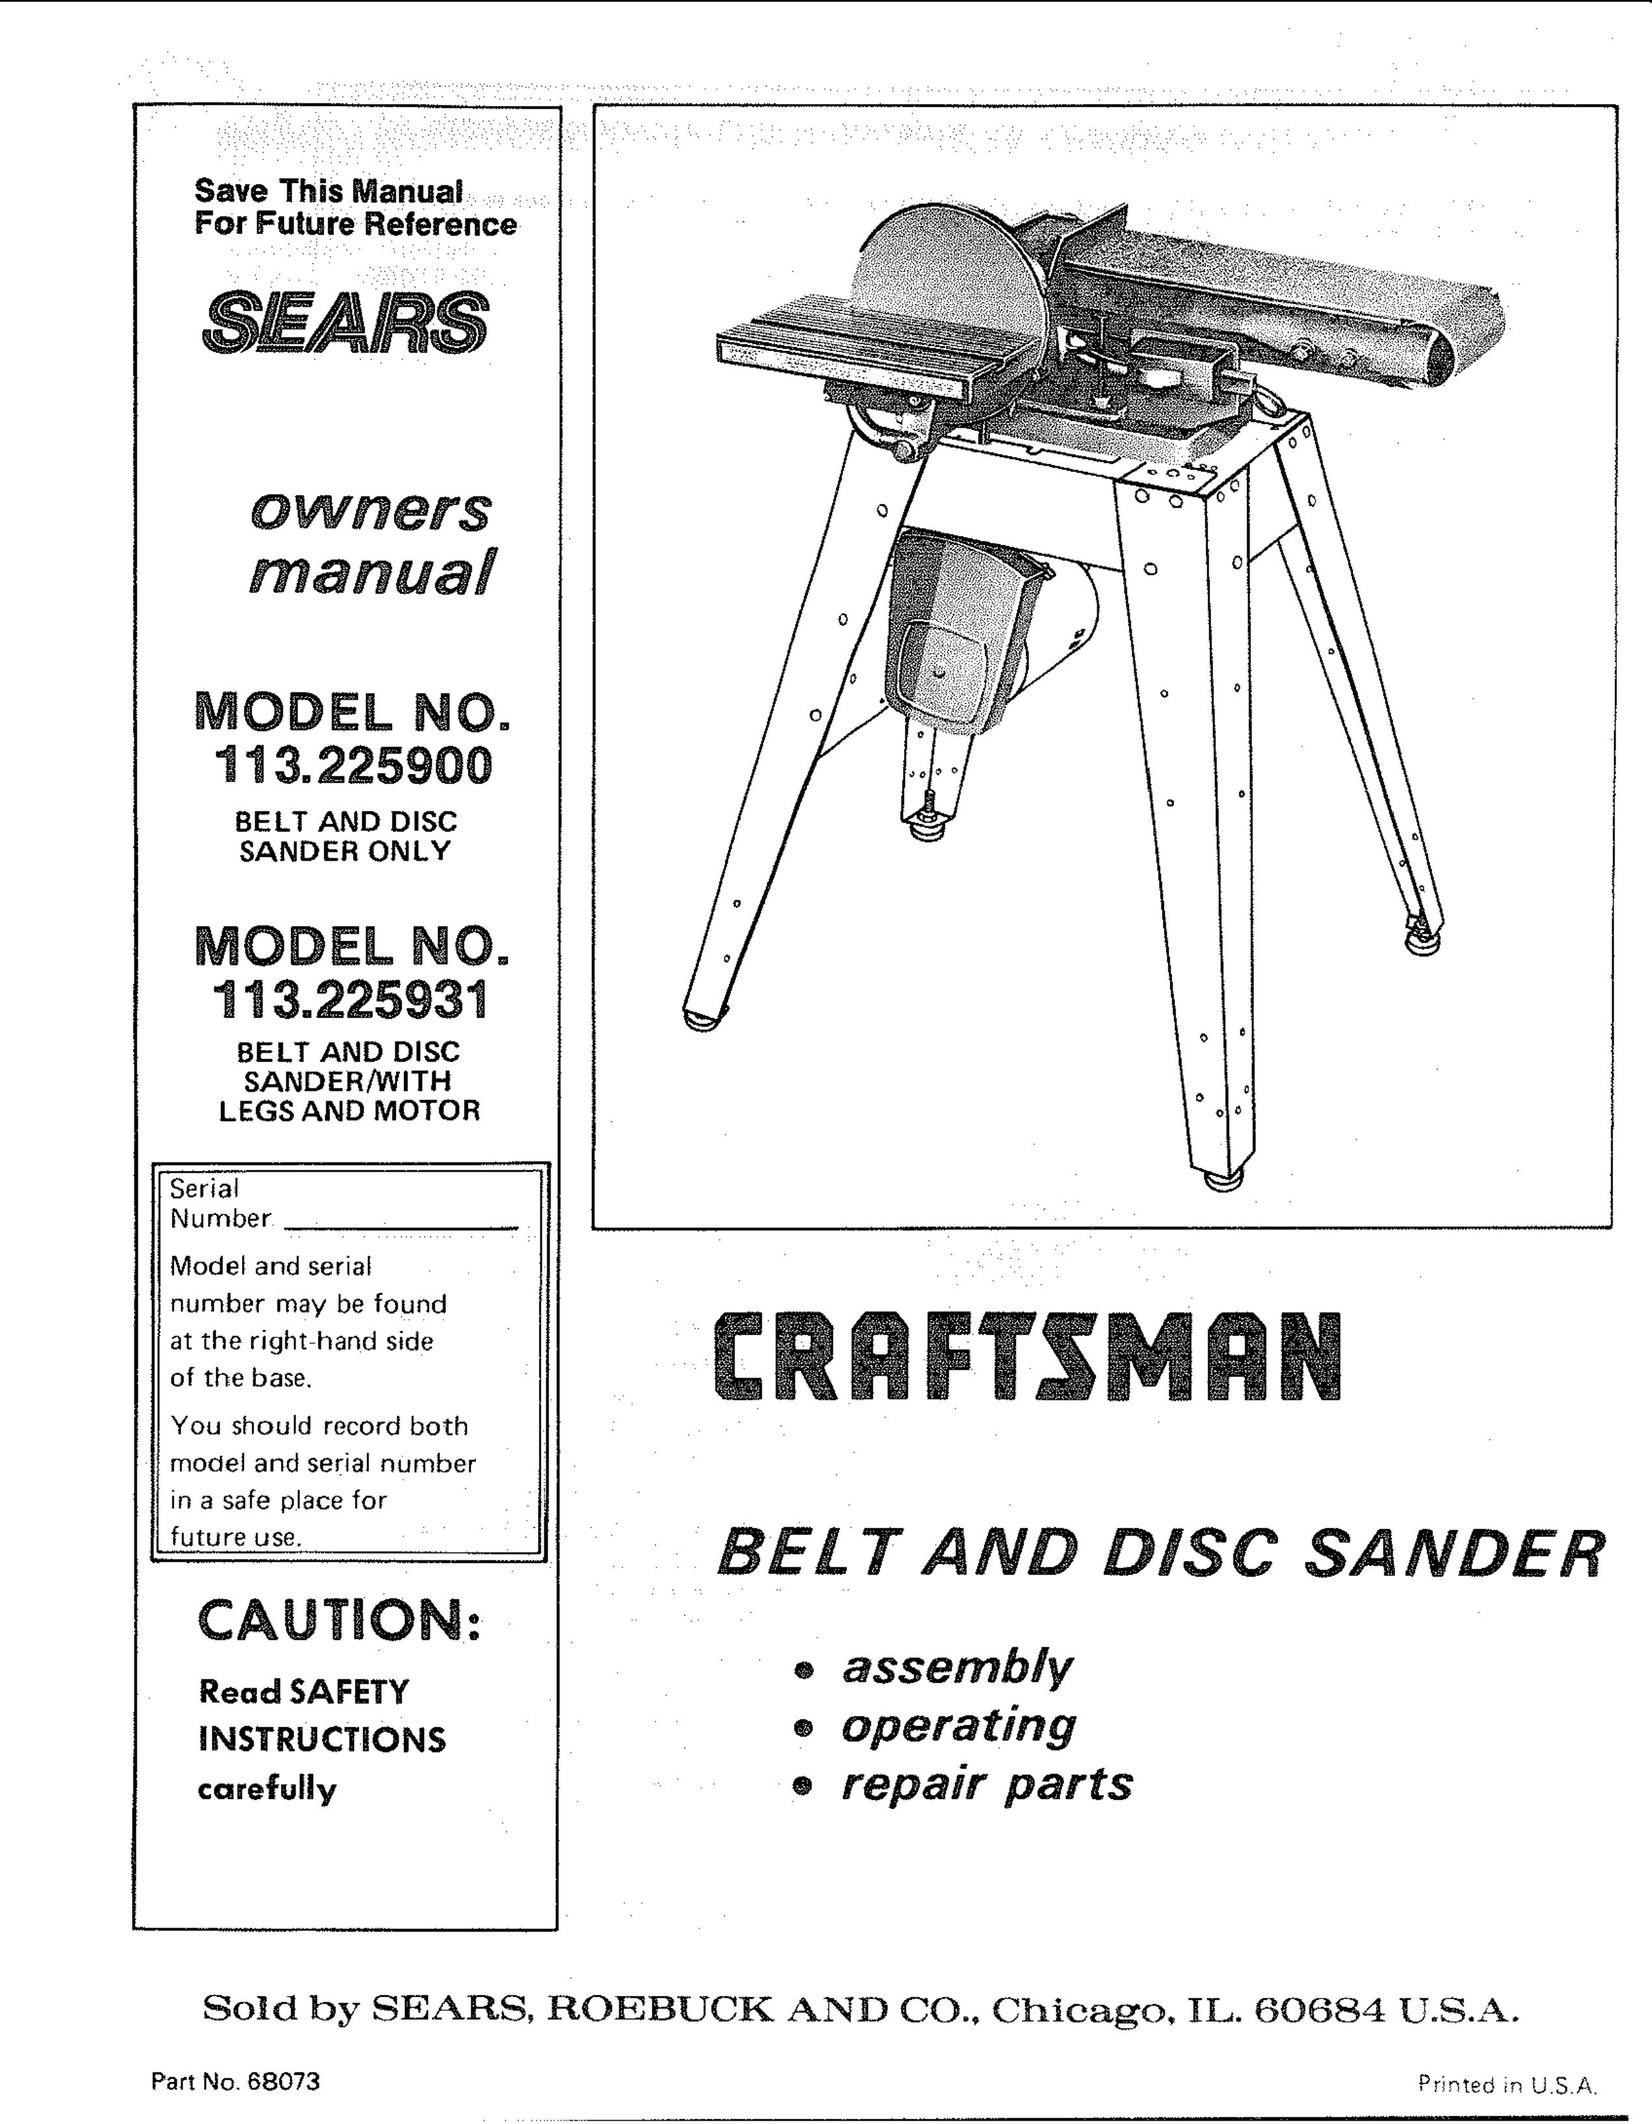 Craftsman 113.225931 Sander User Manual